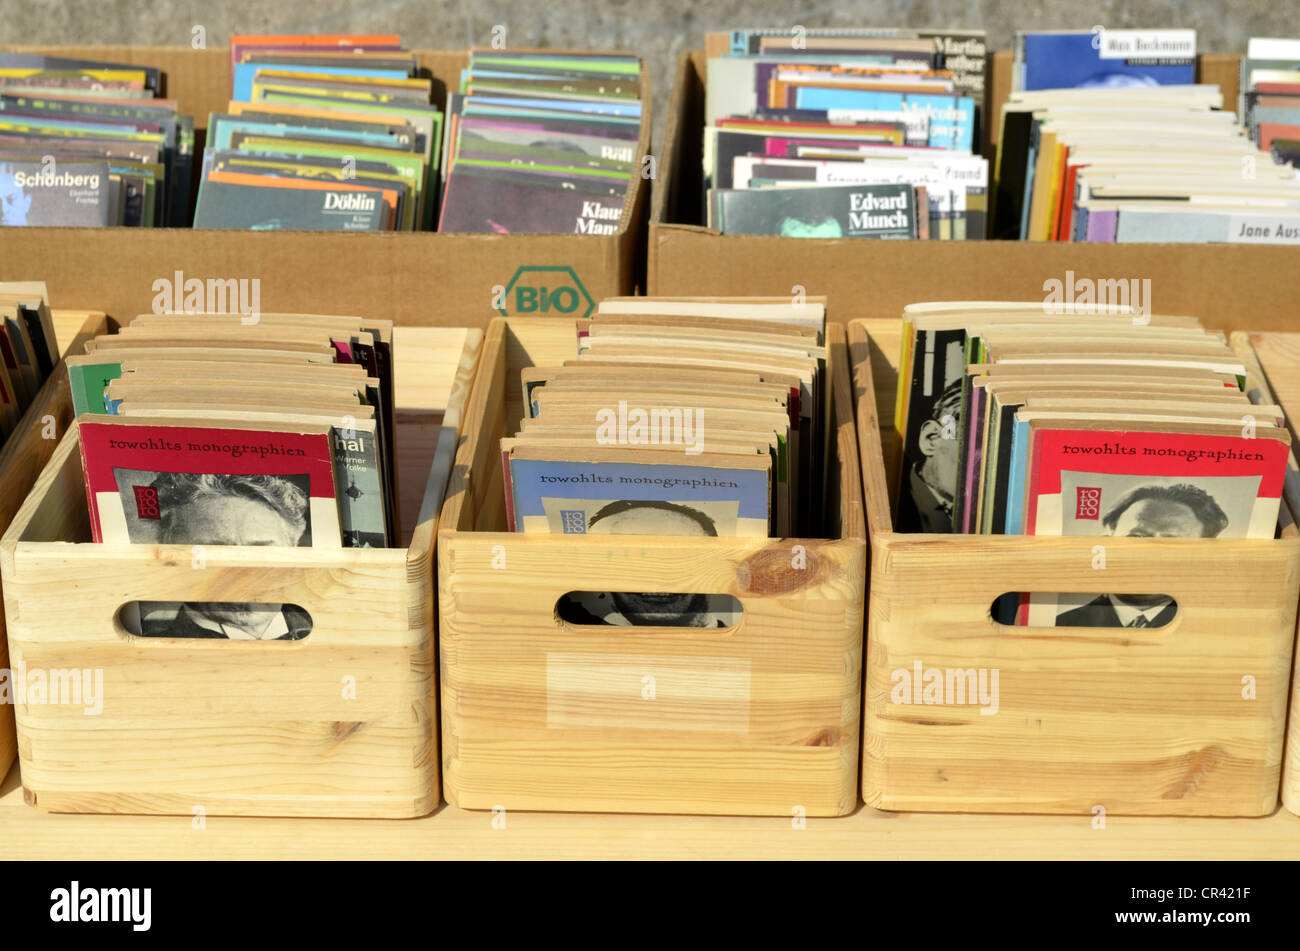 Livres et romans dans des caisses en bois, marché aux puces, Düsseldorf, Rhénanie du Nord-Westphalie, Allemagne, Europe Banque D'Images